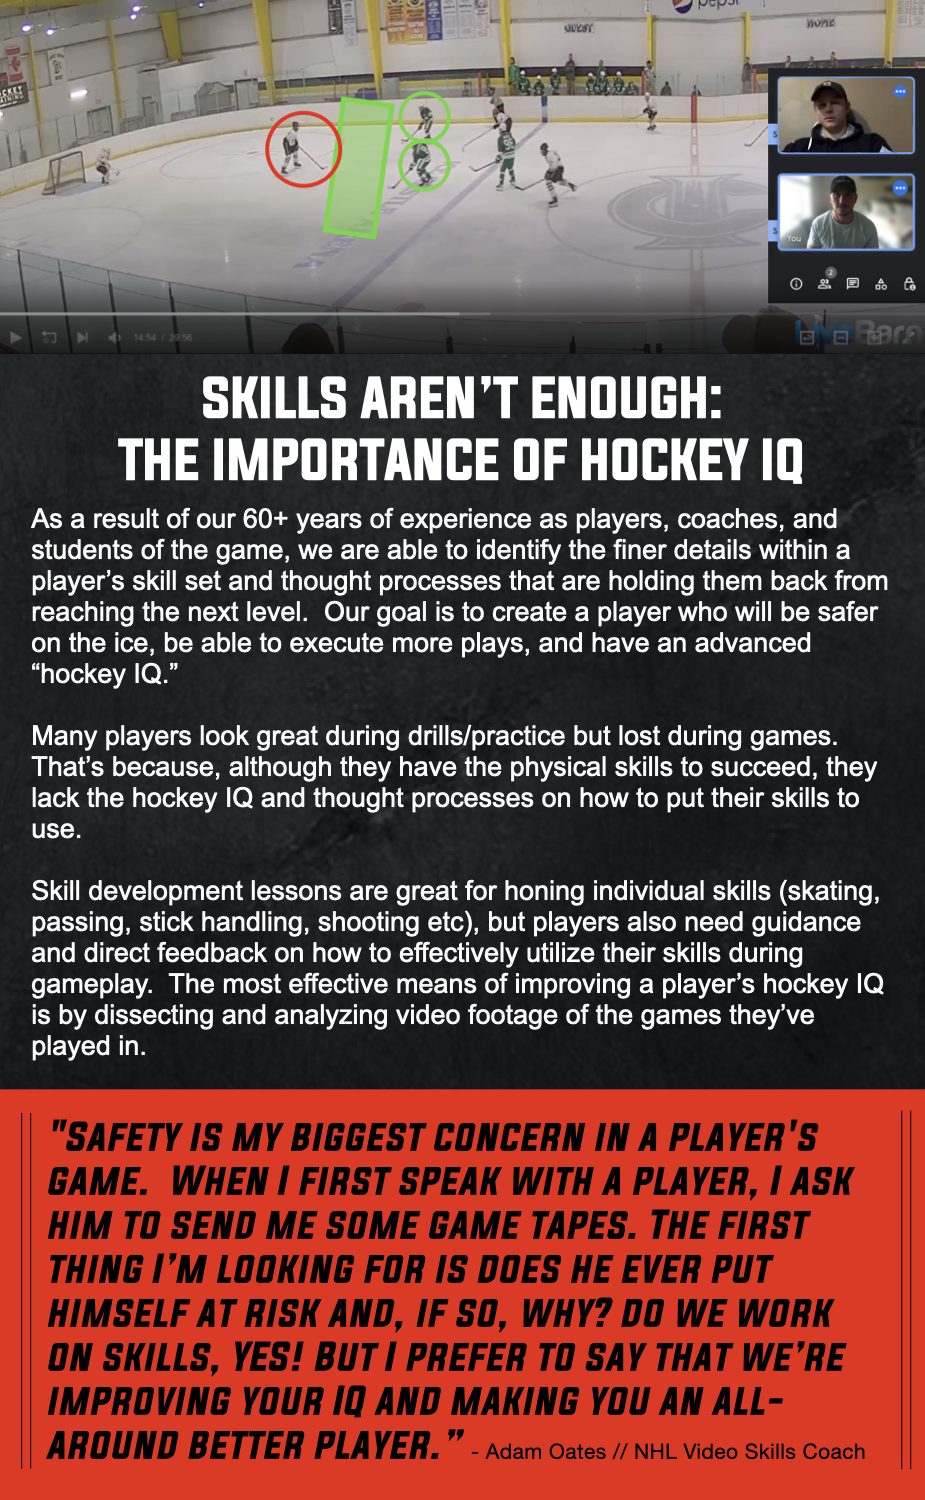 Hockey IQ / Video Analysis